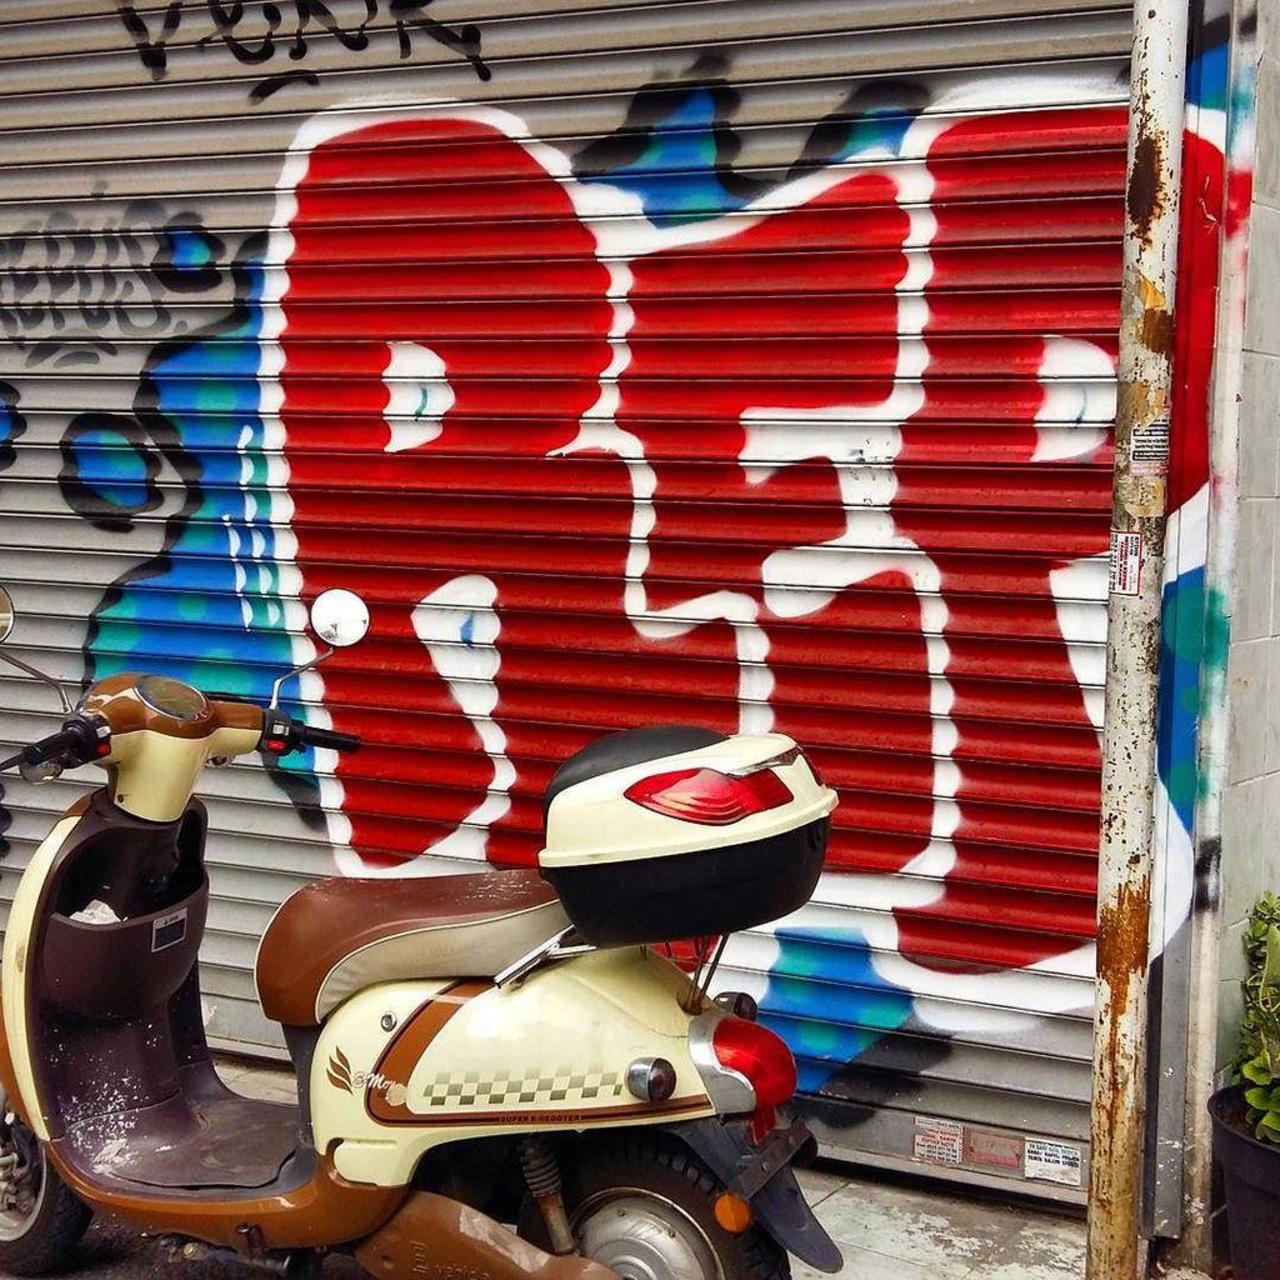 By @repusone @dsb_graff #dsb_graff @rsa_graffiti @streetawesome #streetart #urbanart #graffitiart #graffiti #street… http://t.co/jGut6vw4hf